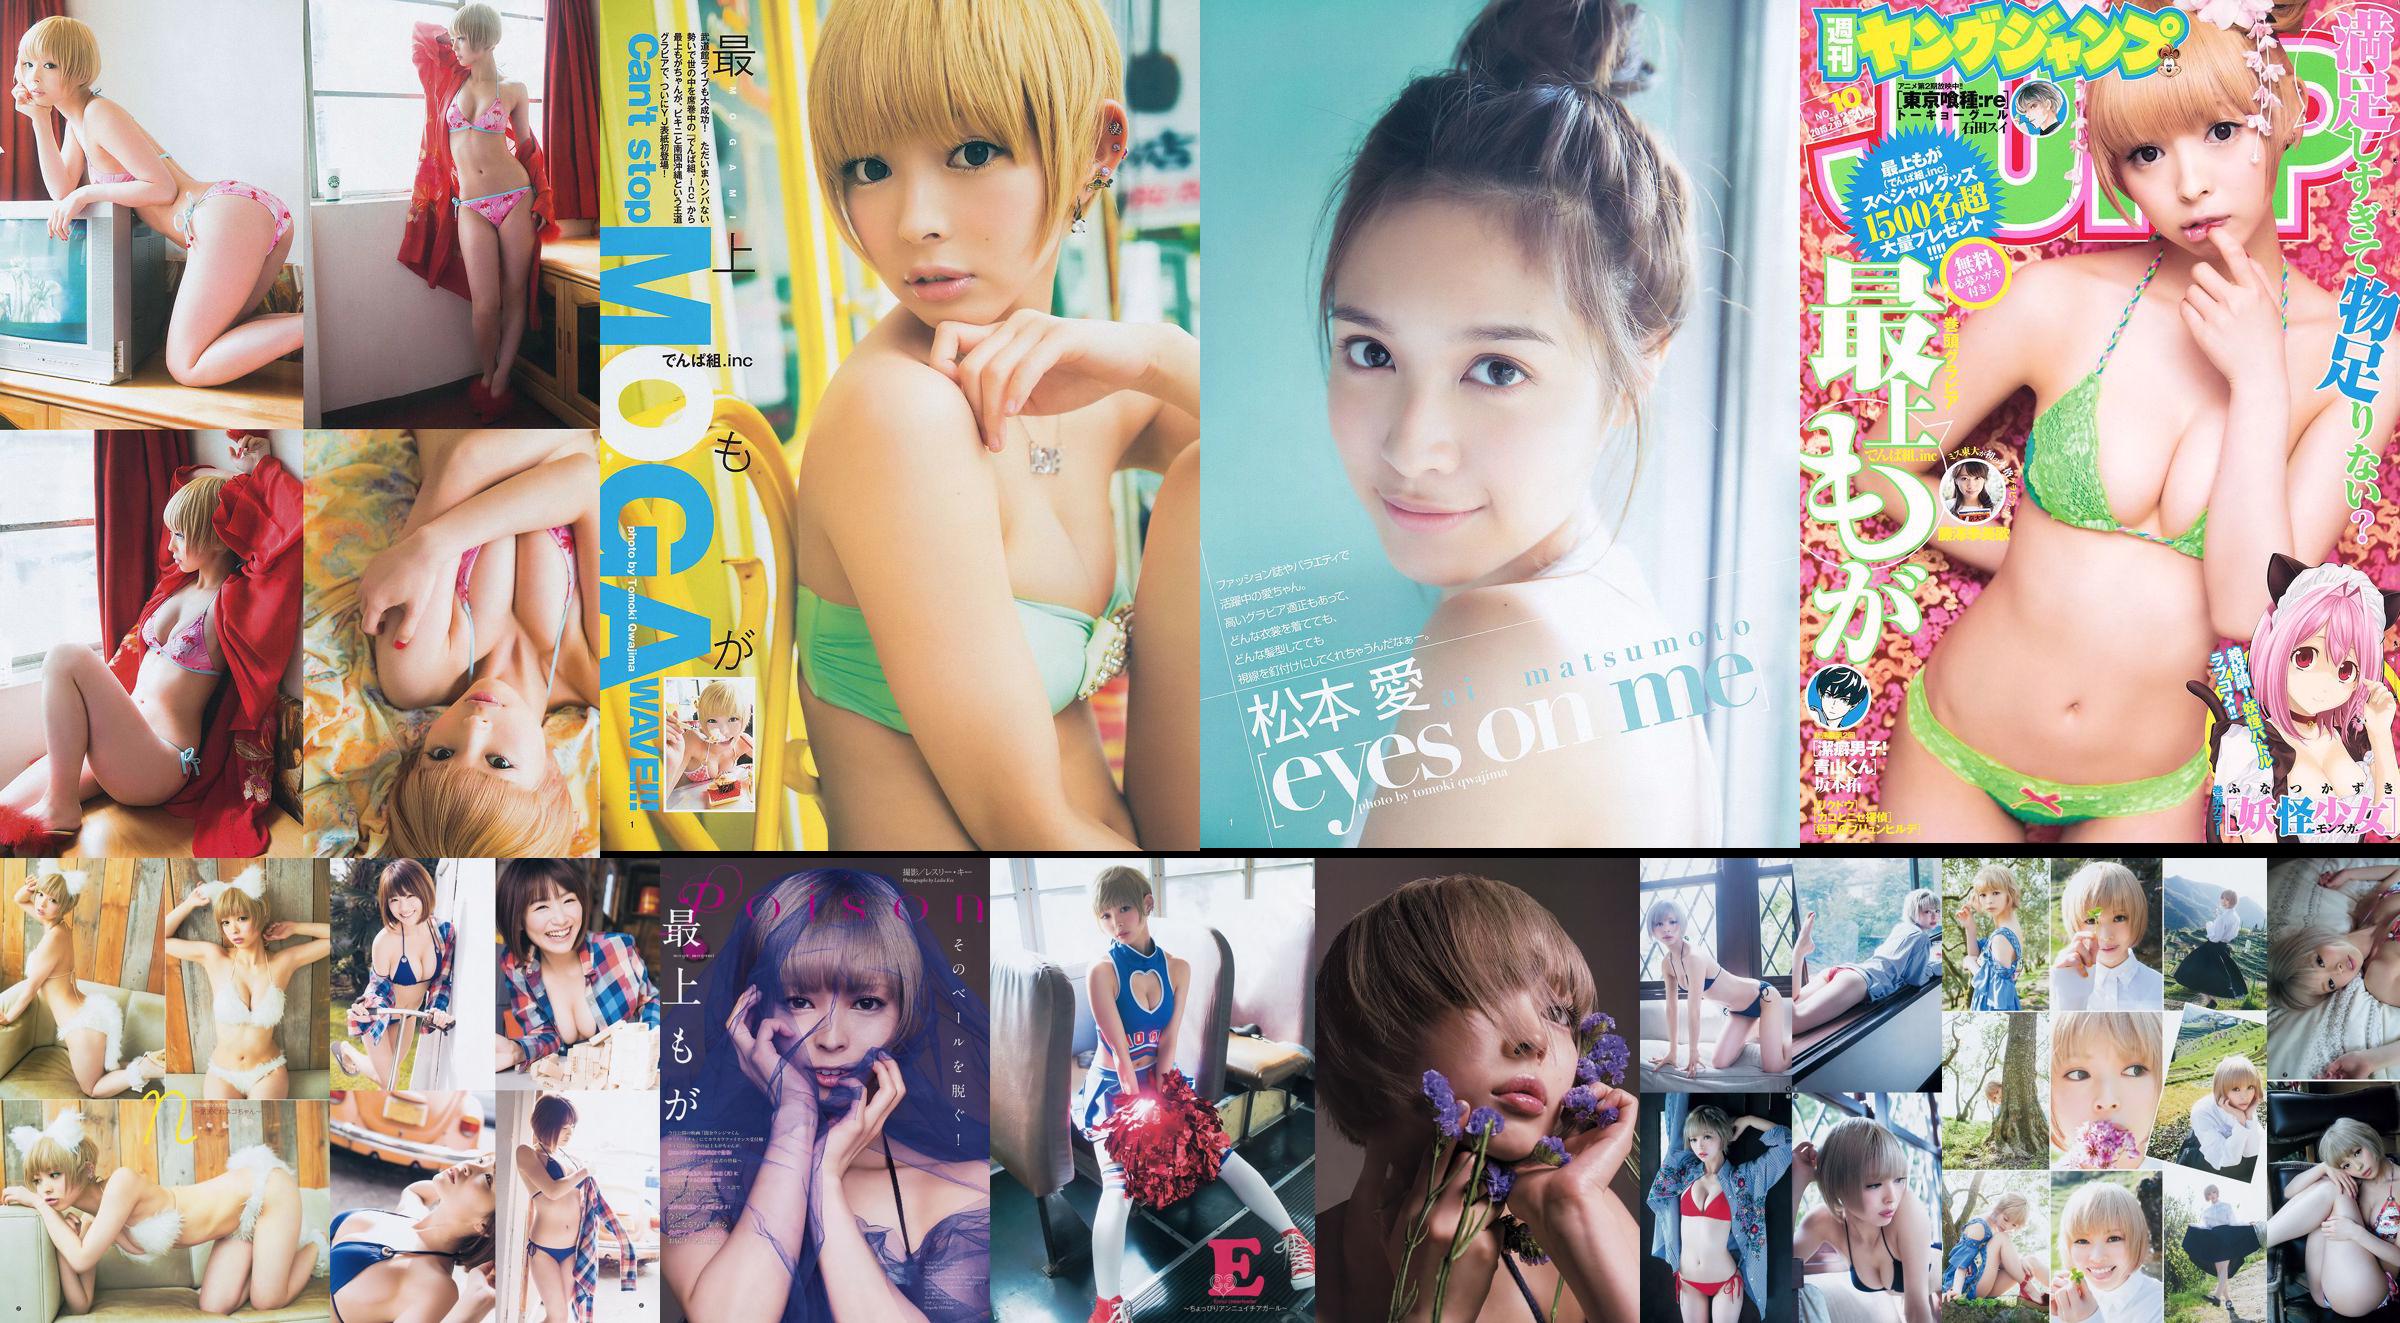 最上もが 48グループ 横山ルリカ [Weekly Young Jump] 2014年No.19 写真杂志 No.1234c9 第10頁